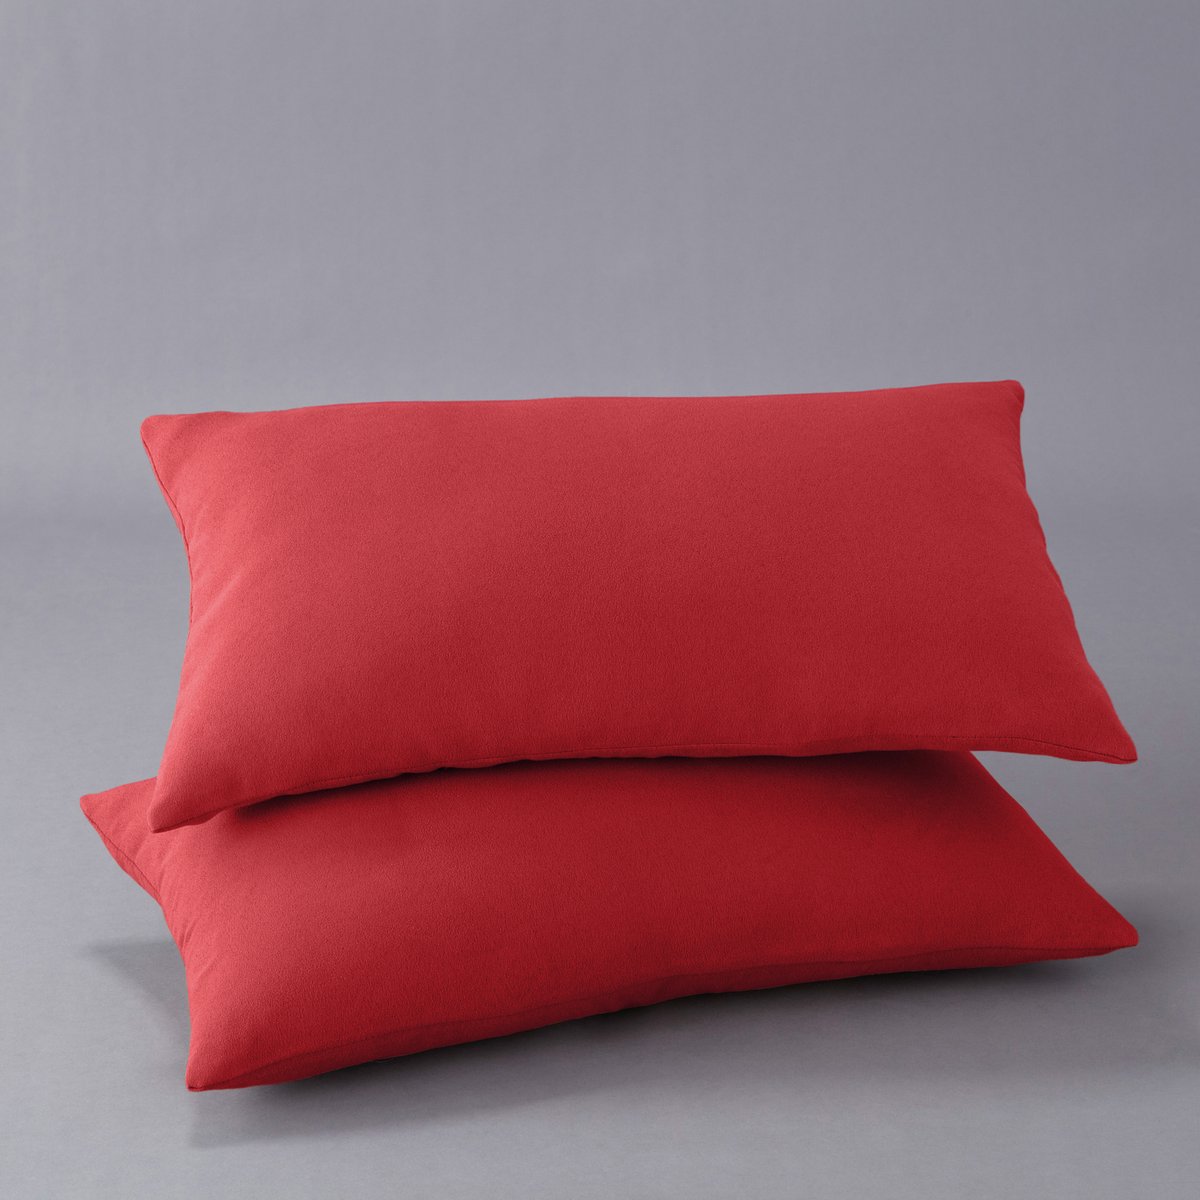 

Чехла La Redoute, Красный, На подушку 50 x 30 см красный